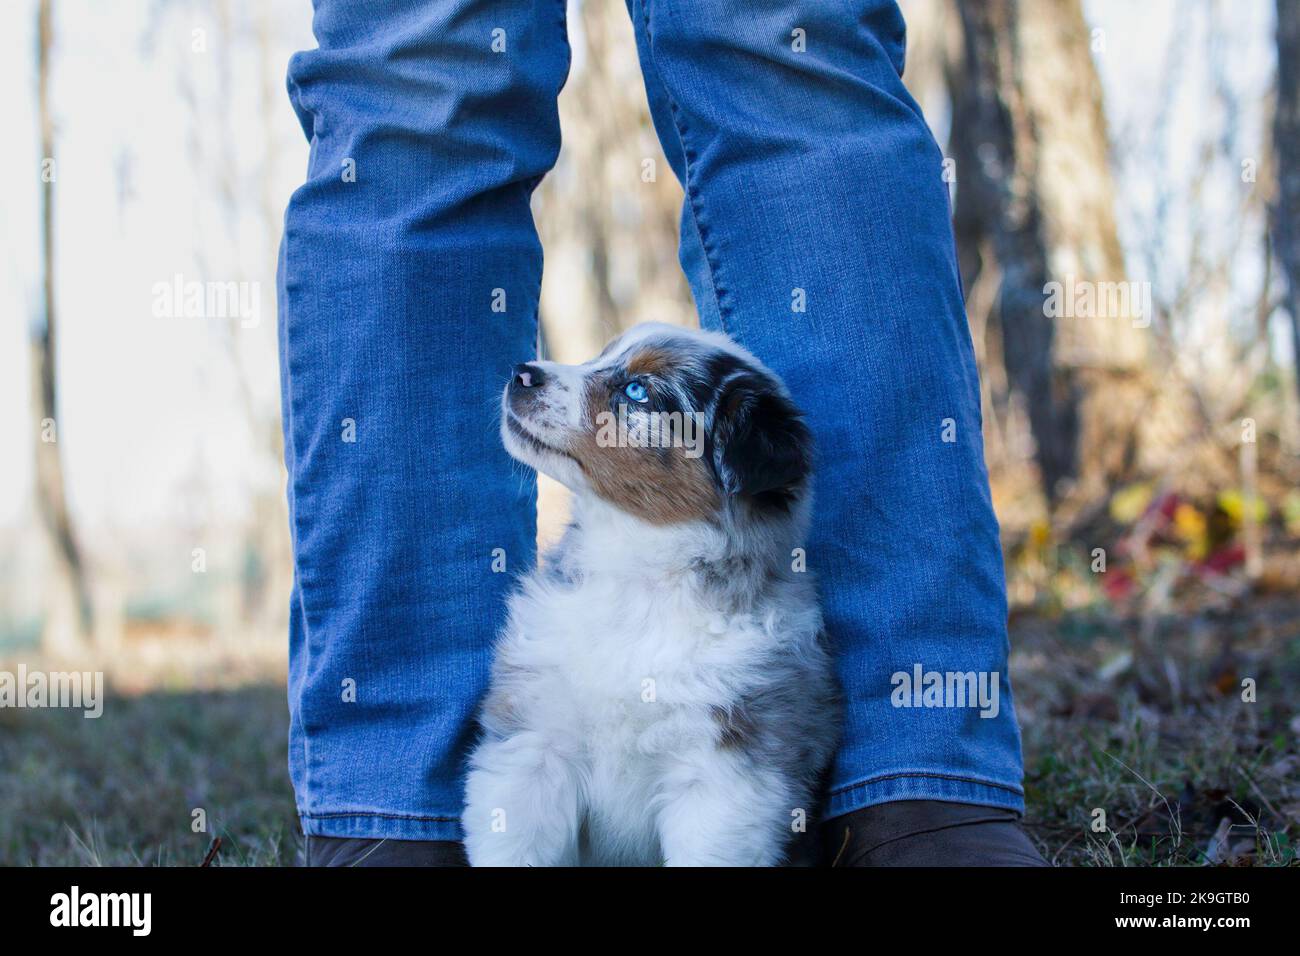 Magnifique jeune mâle Blue Merle chien Berger australien chiot assis aux pieds d'une femme. Mise au point sélective avec arrière-plan flou. Recherche. Banque D'Images